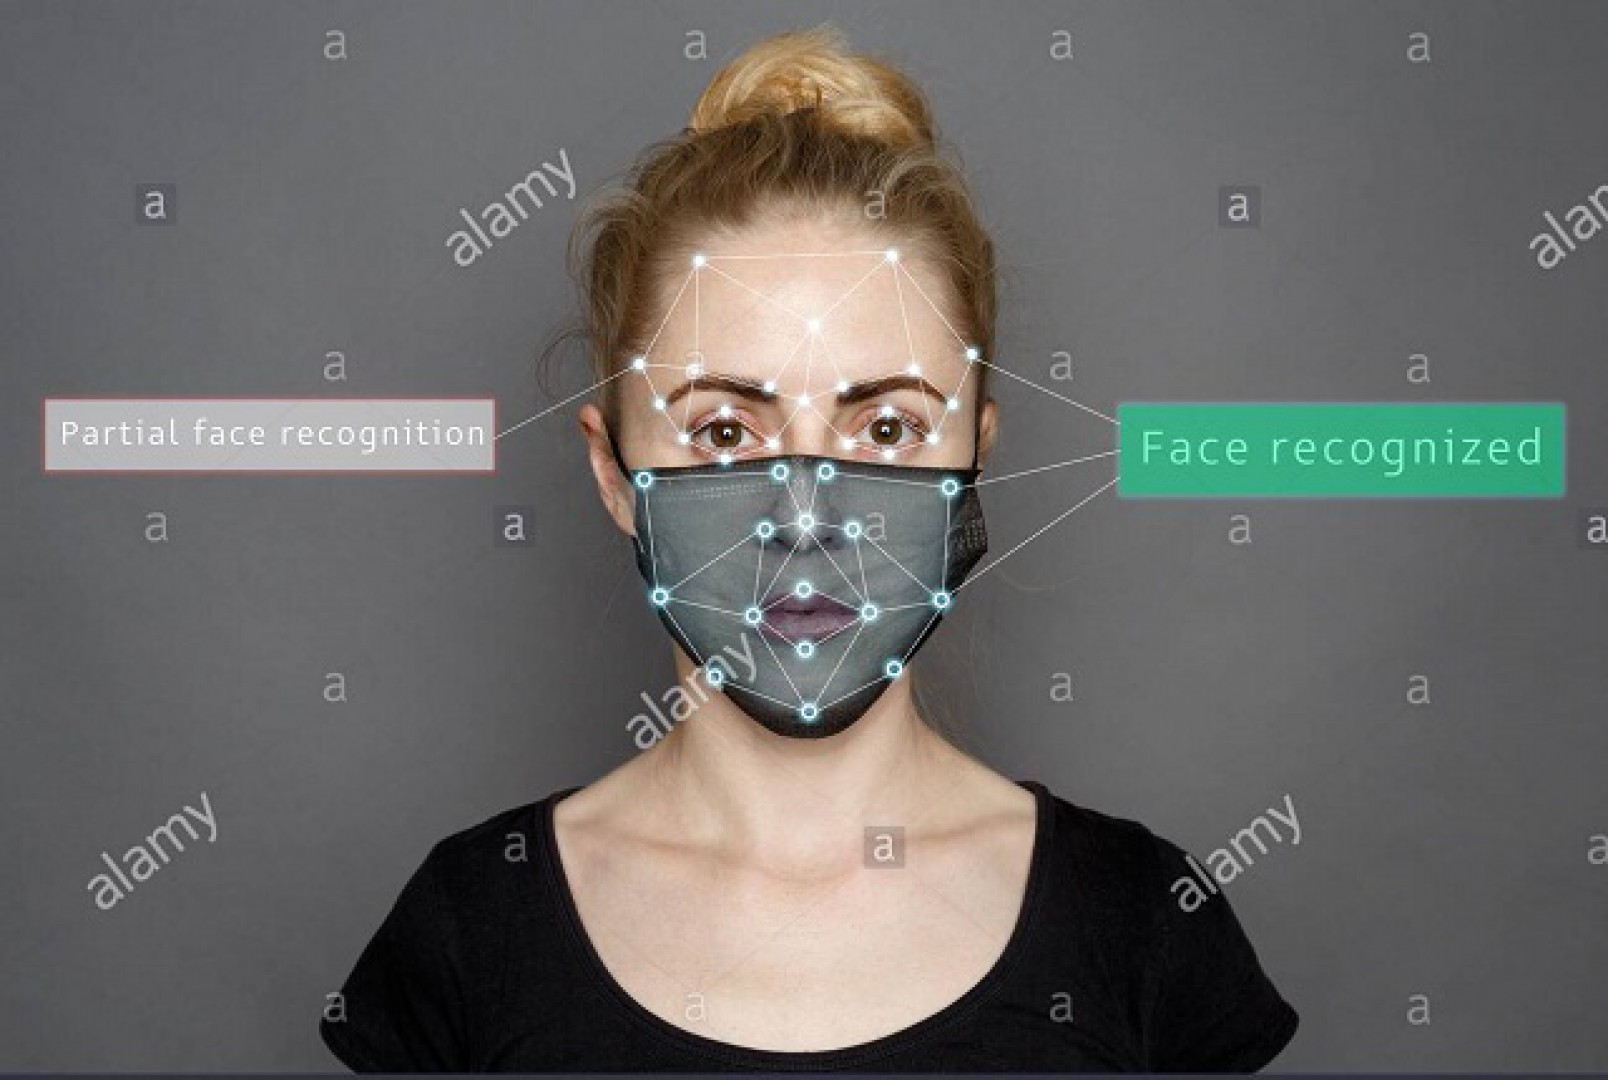 ایالات متحده درحال کار بر روی تشخیص چهره افراد با ماسک است